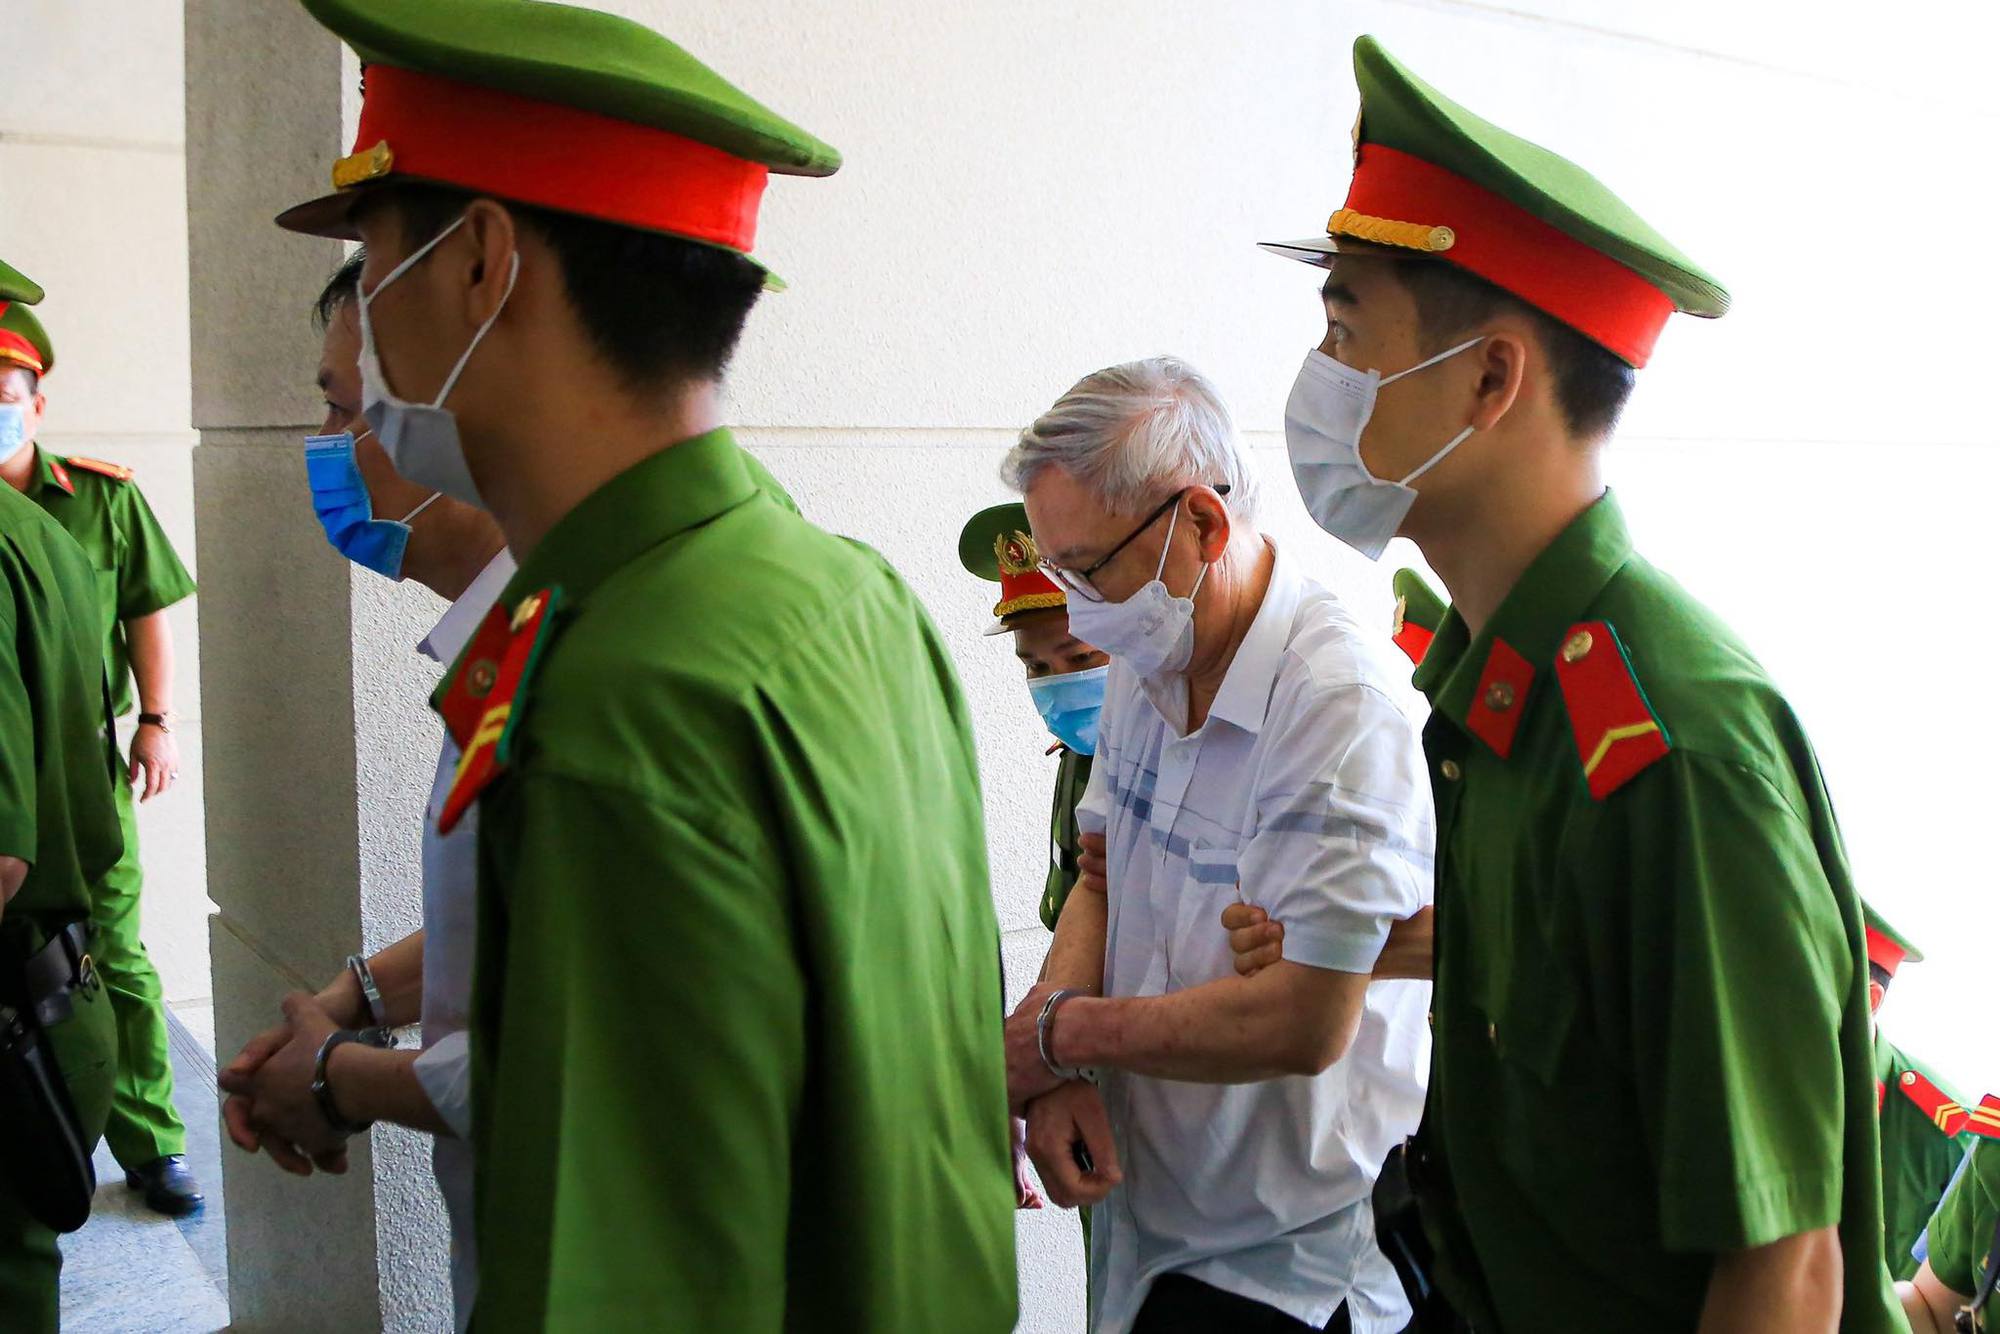 Cựu bí thư Bình Dương Trần Văn Nam cùng các đồng phạm bị dẫn giải tới tòa - Ảnh 6.